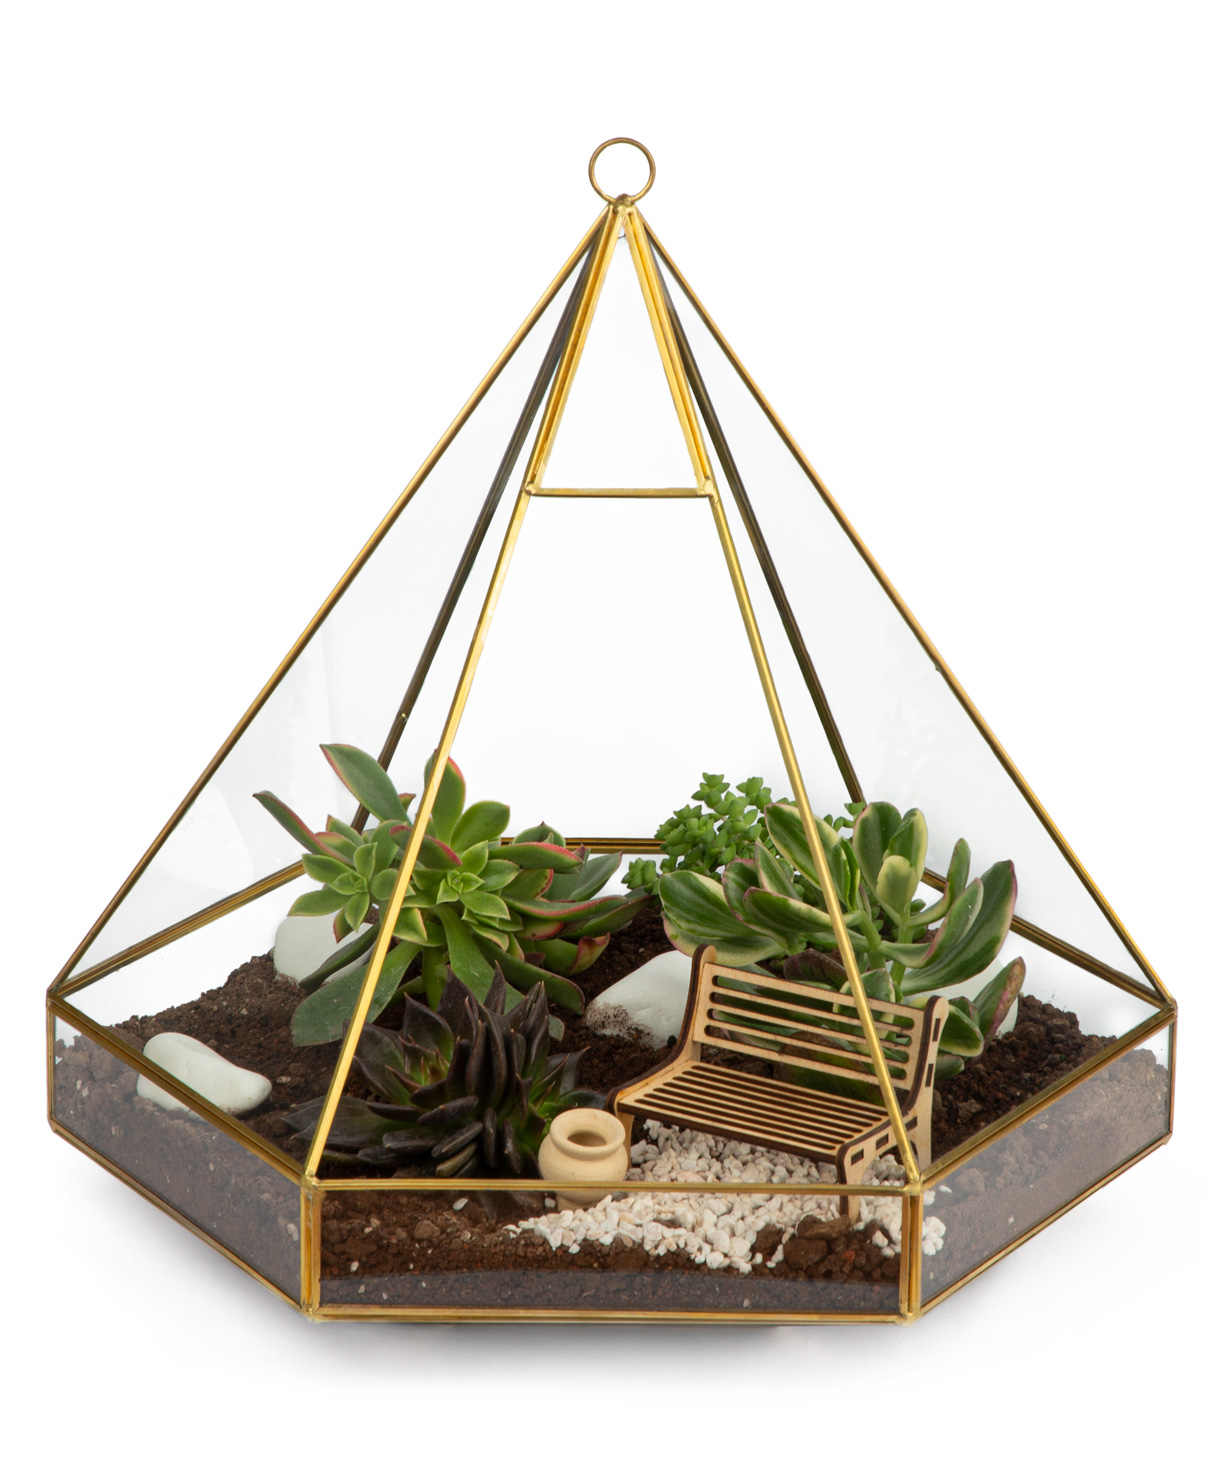 Florarium 'Pyramid'' with succelents